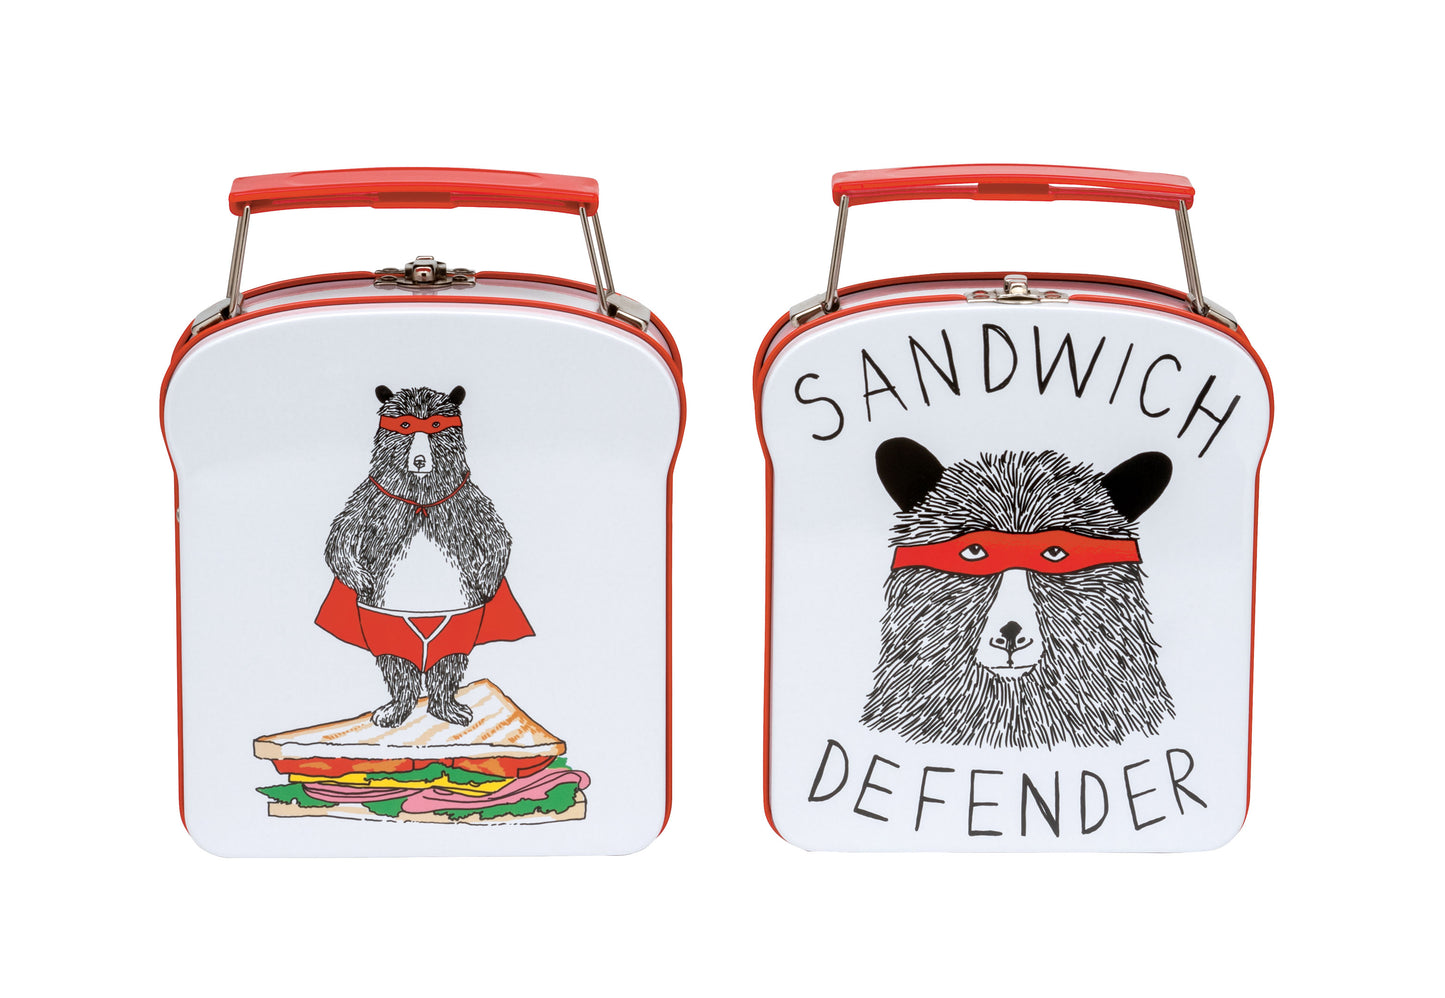 Sandwich Defender Tin